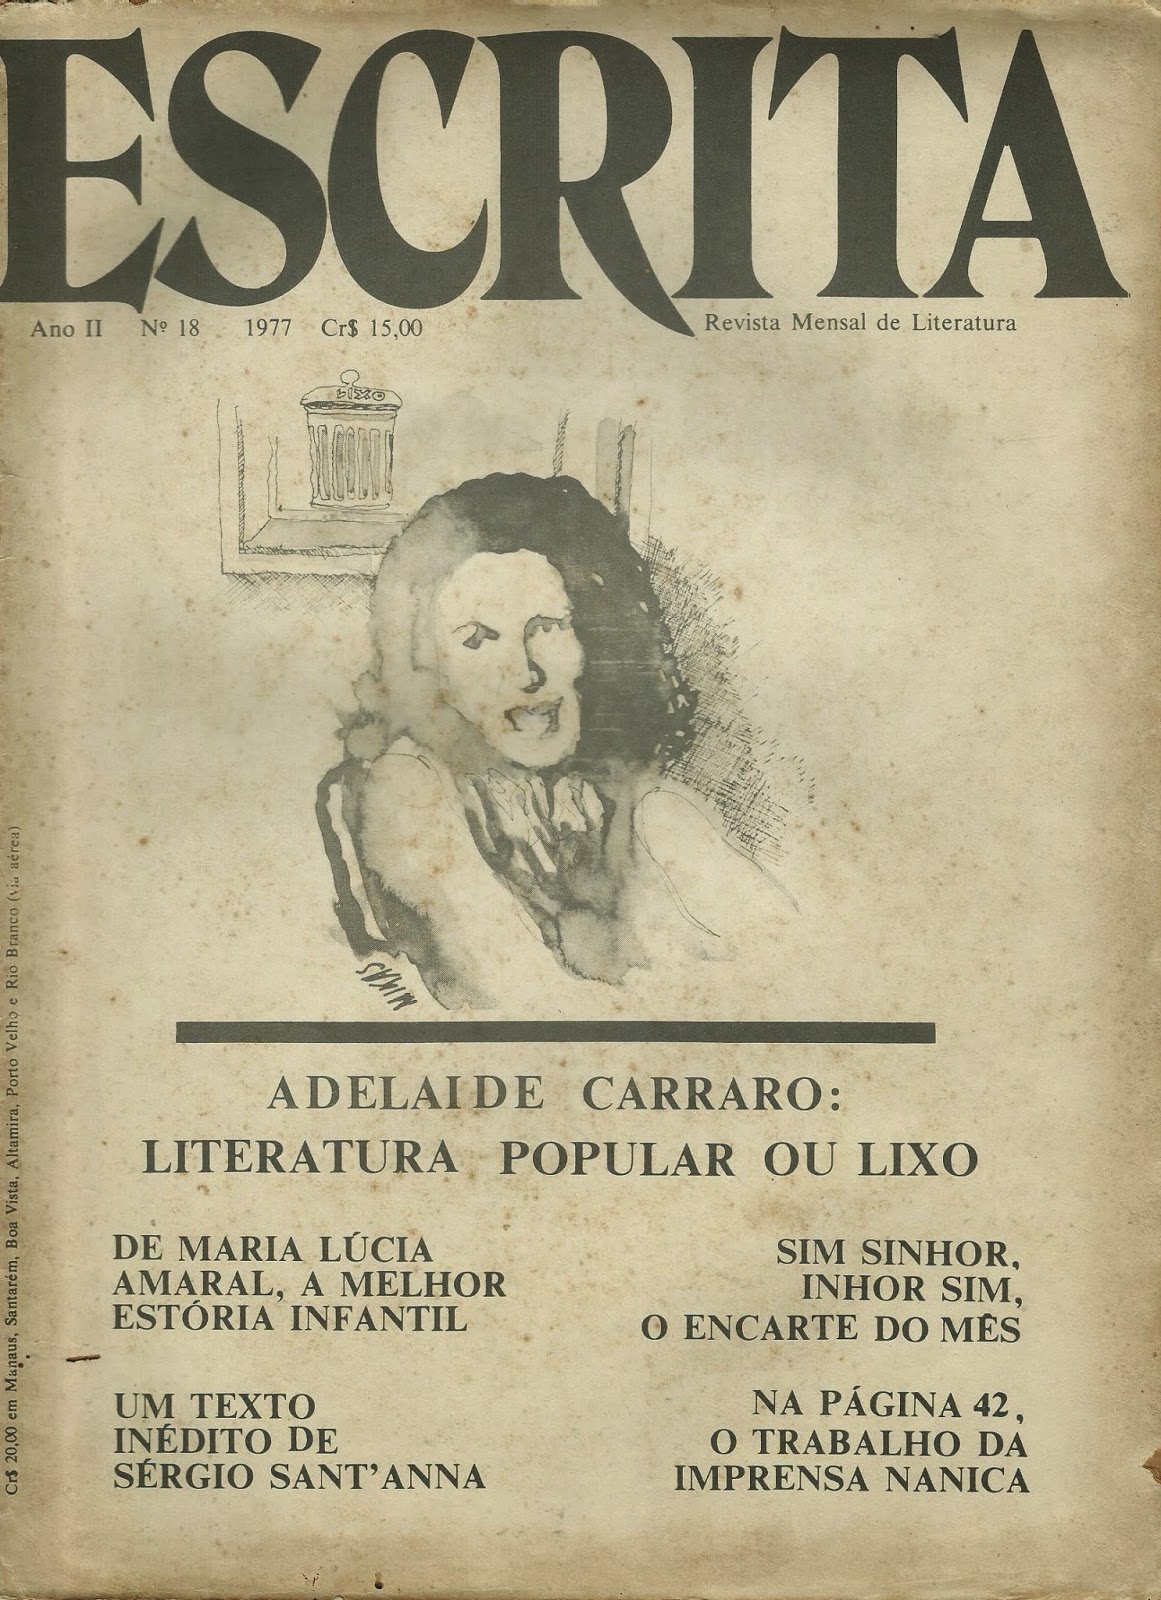 RevistaDeLetraEmLetra vol5 n2 2018 by Revista De Letra em Letra - Issuu